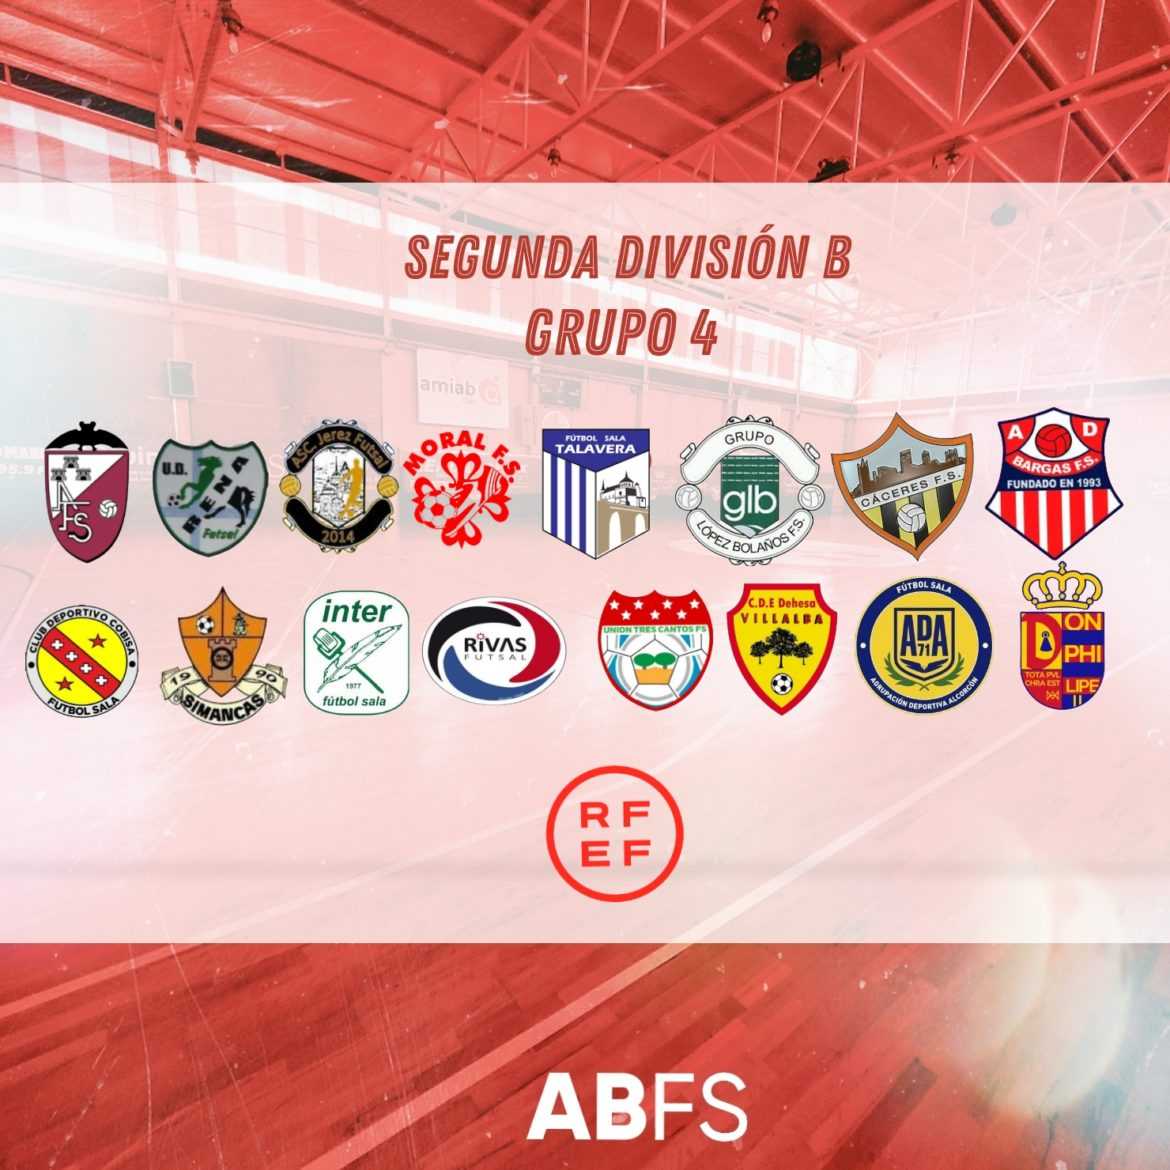 Los tres equipos del Albacete FS que competirán en categoría nacional ya conocen su grupo y rivales